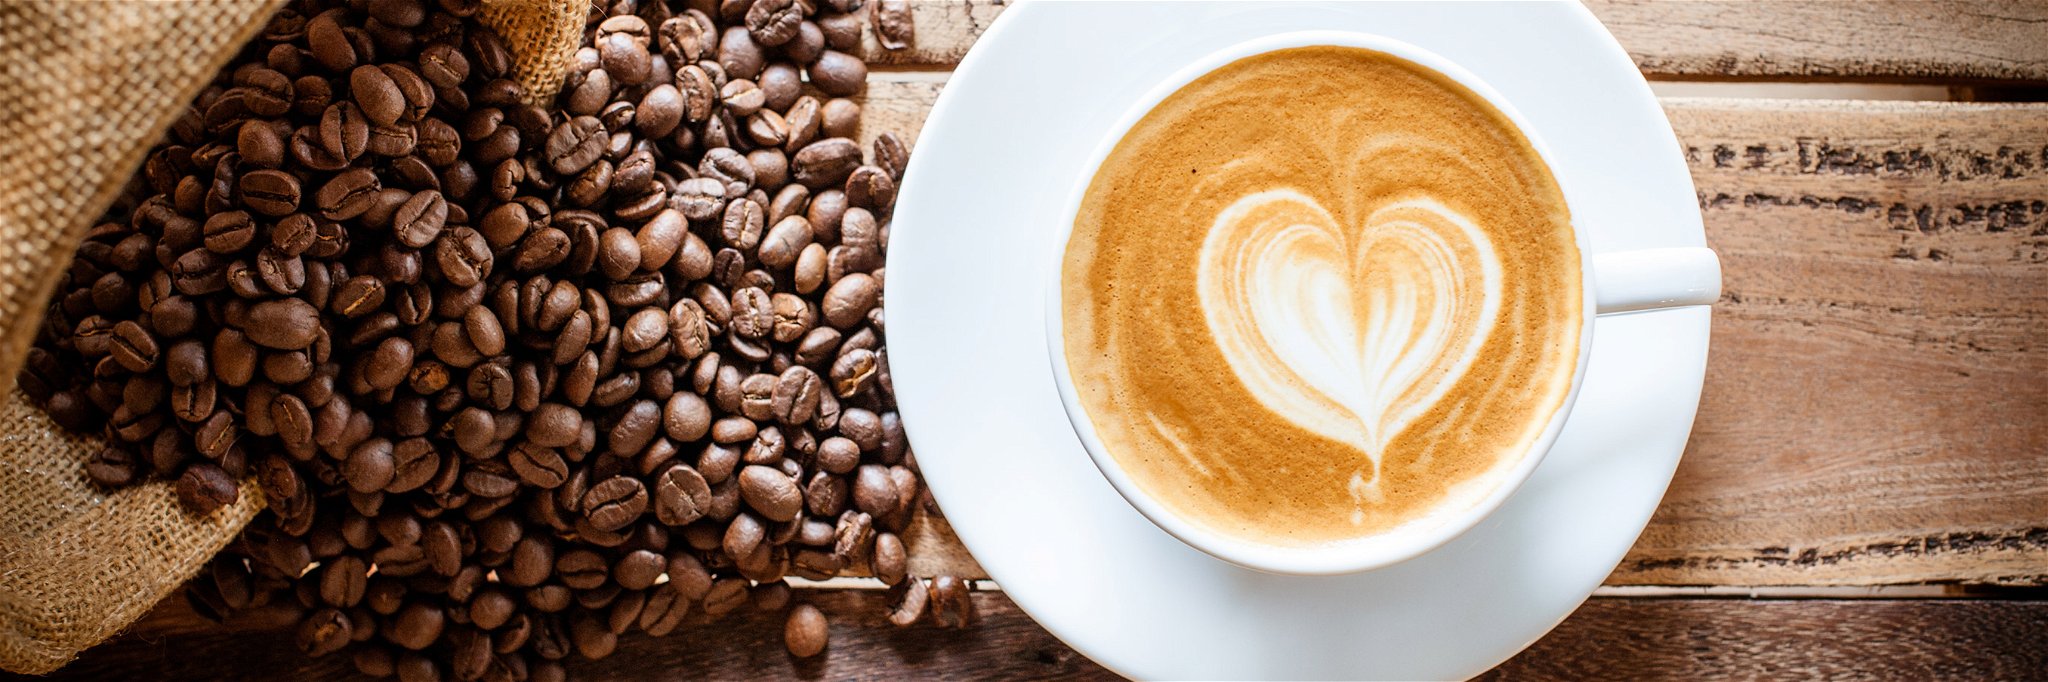 Kaffeegenuss und Leidenschaft